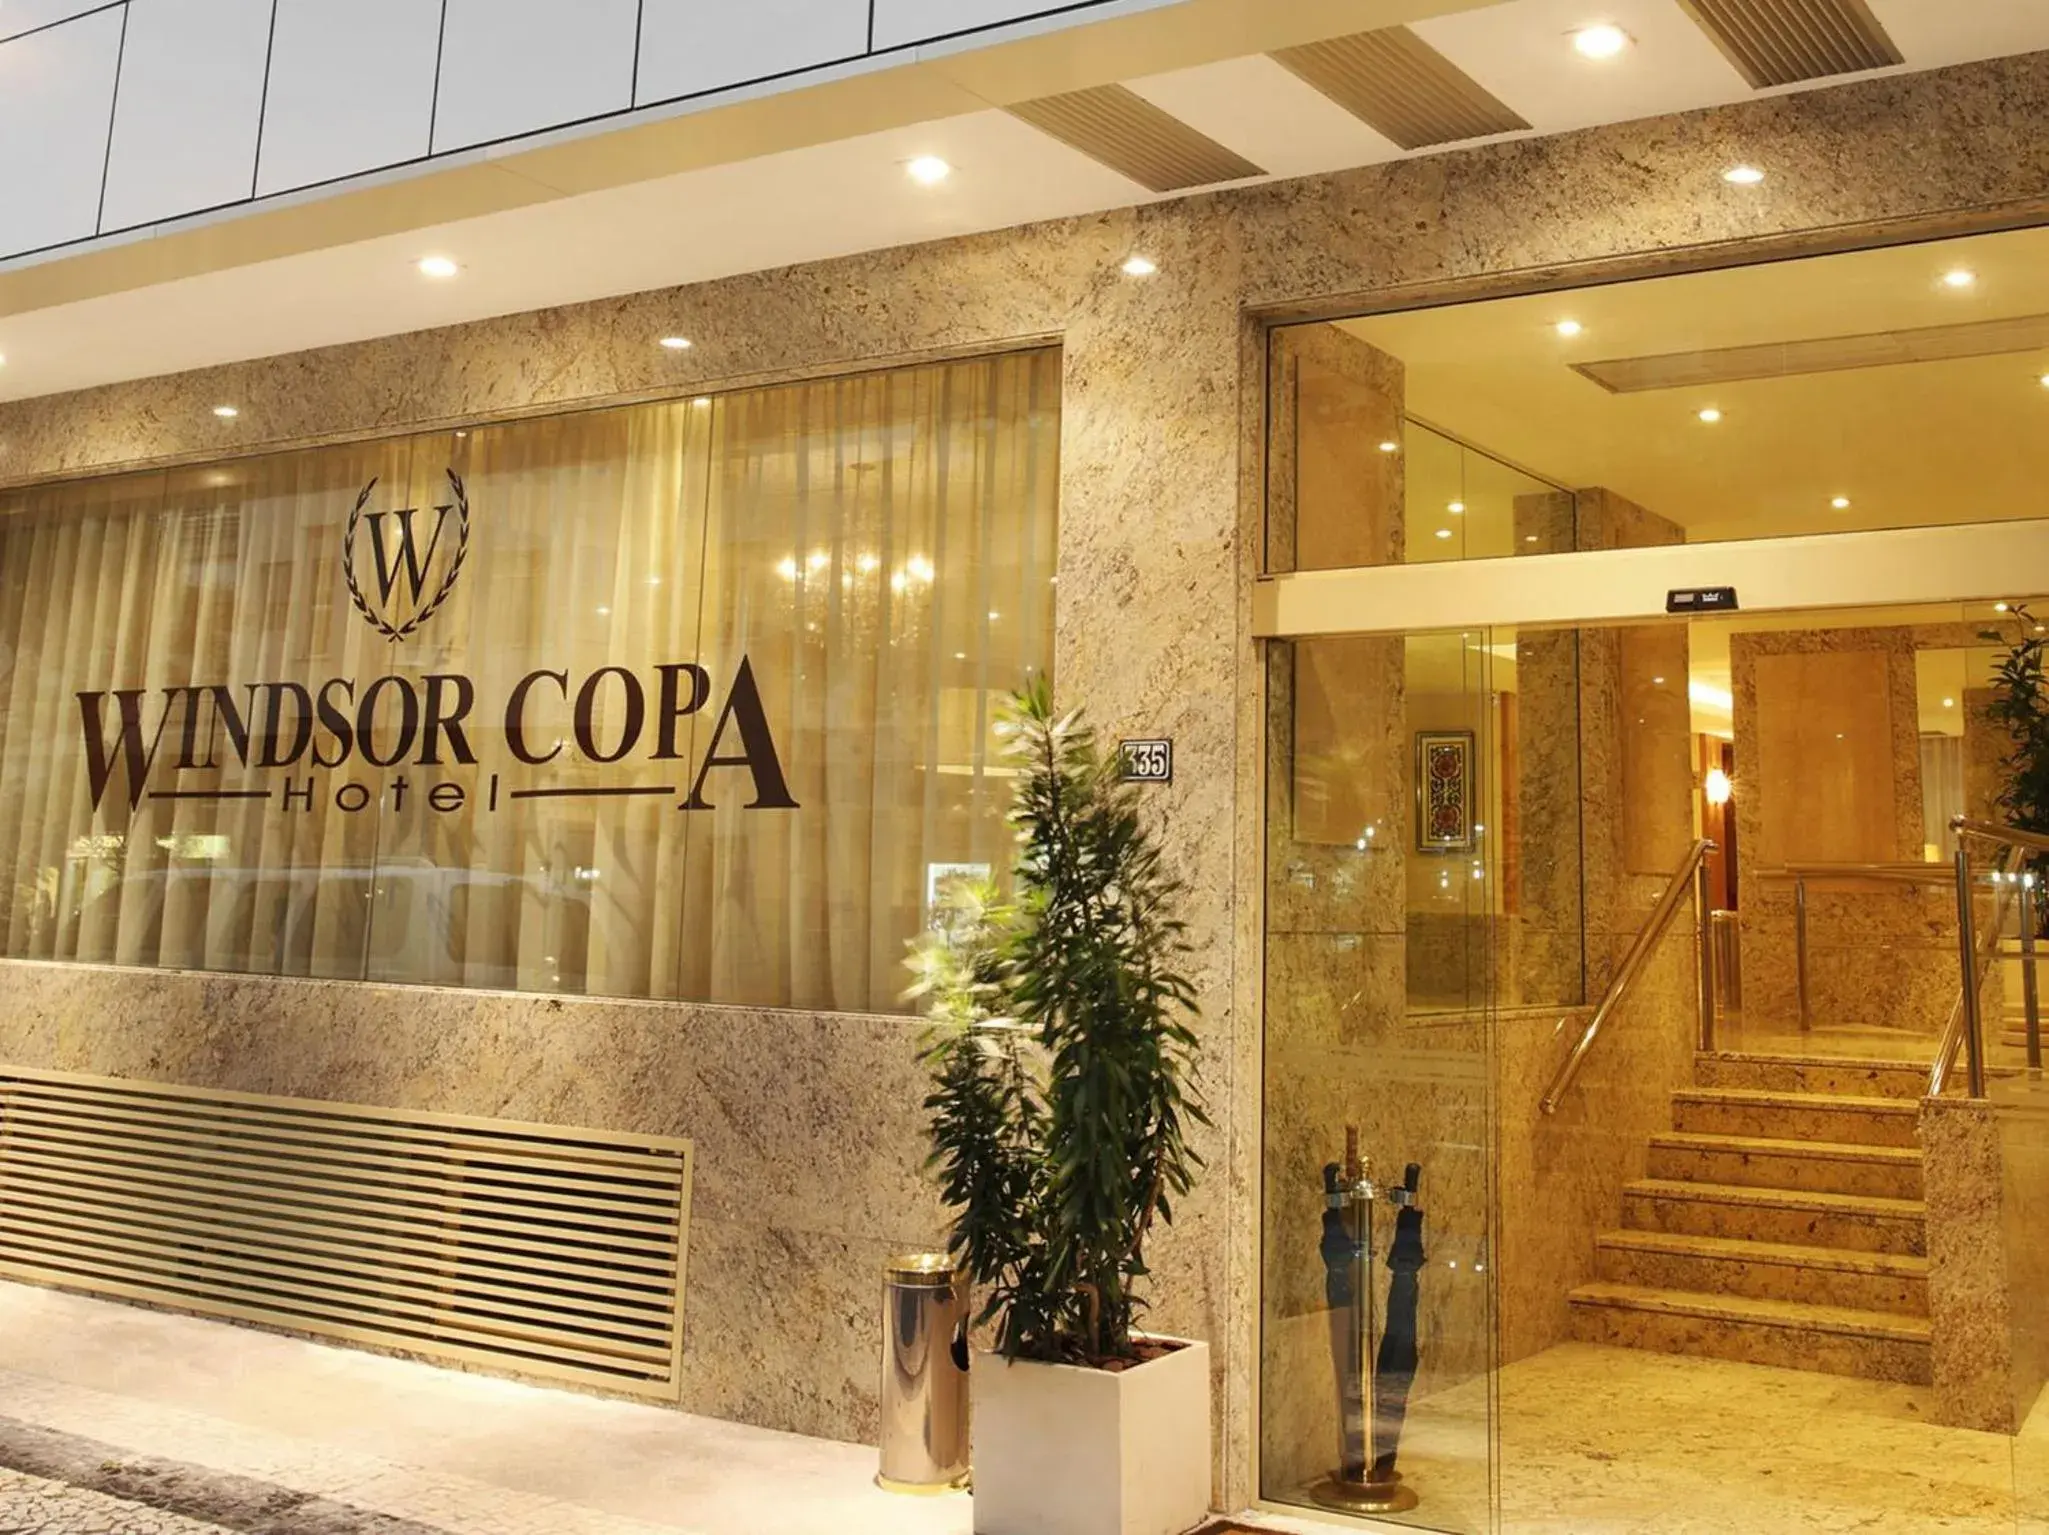 Facade/entrance in Windsor Copa Hotel